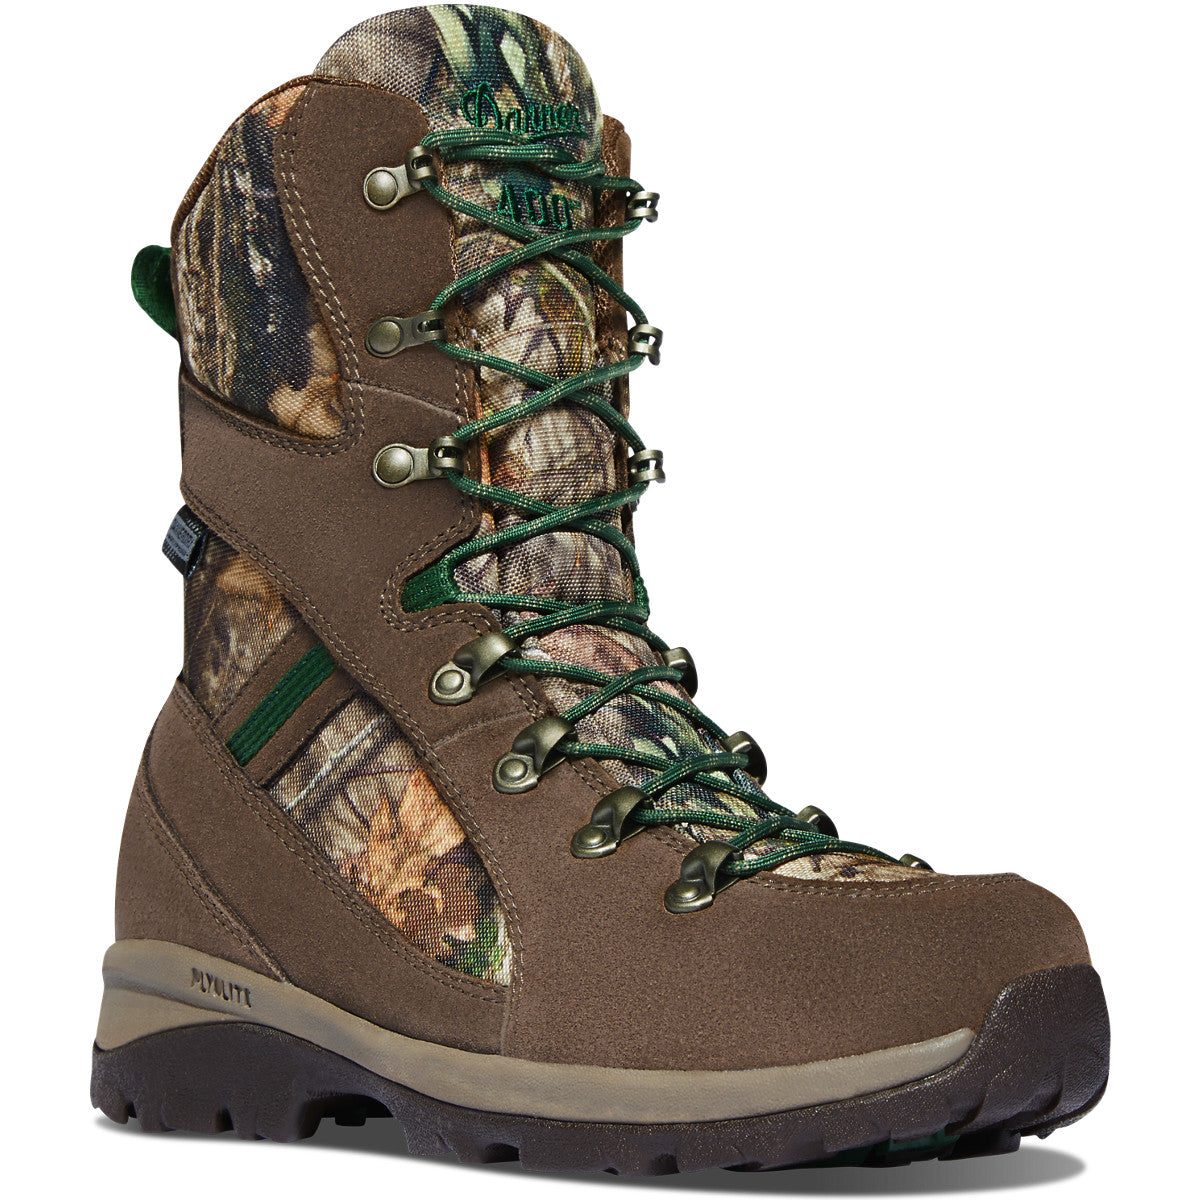 Danner Women's Wayfinder 8" WP Insulated Hunt Boot - Mossy Oak 44211 5 / Medium / Mossy Oak - Overlook Boots